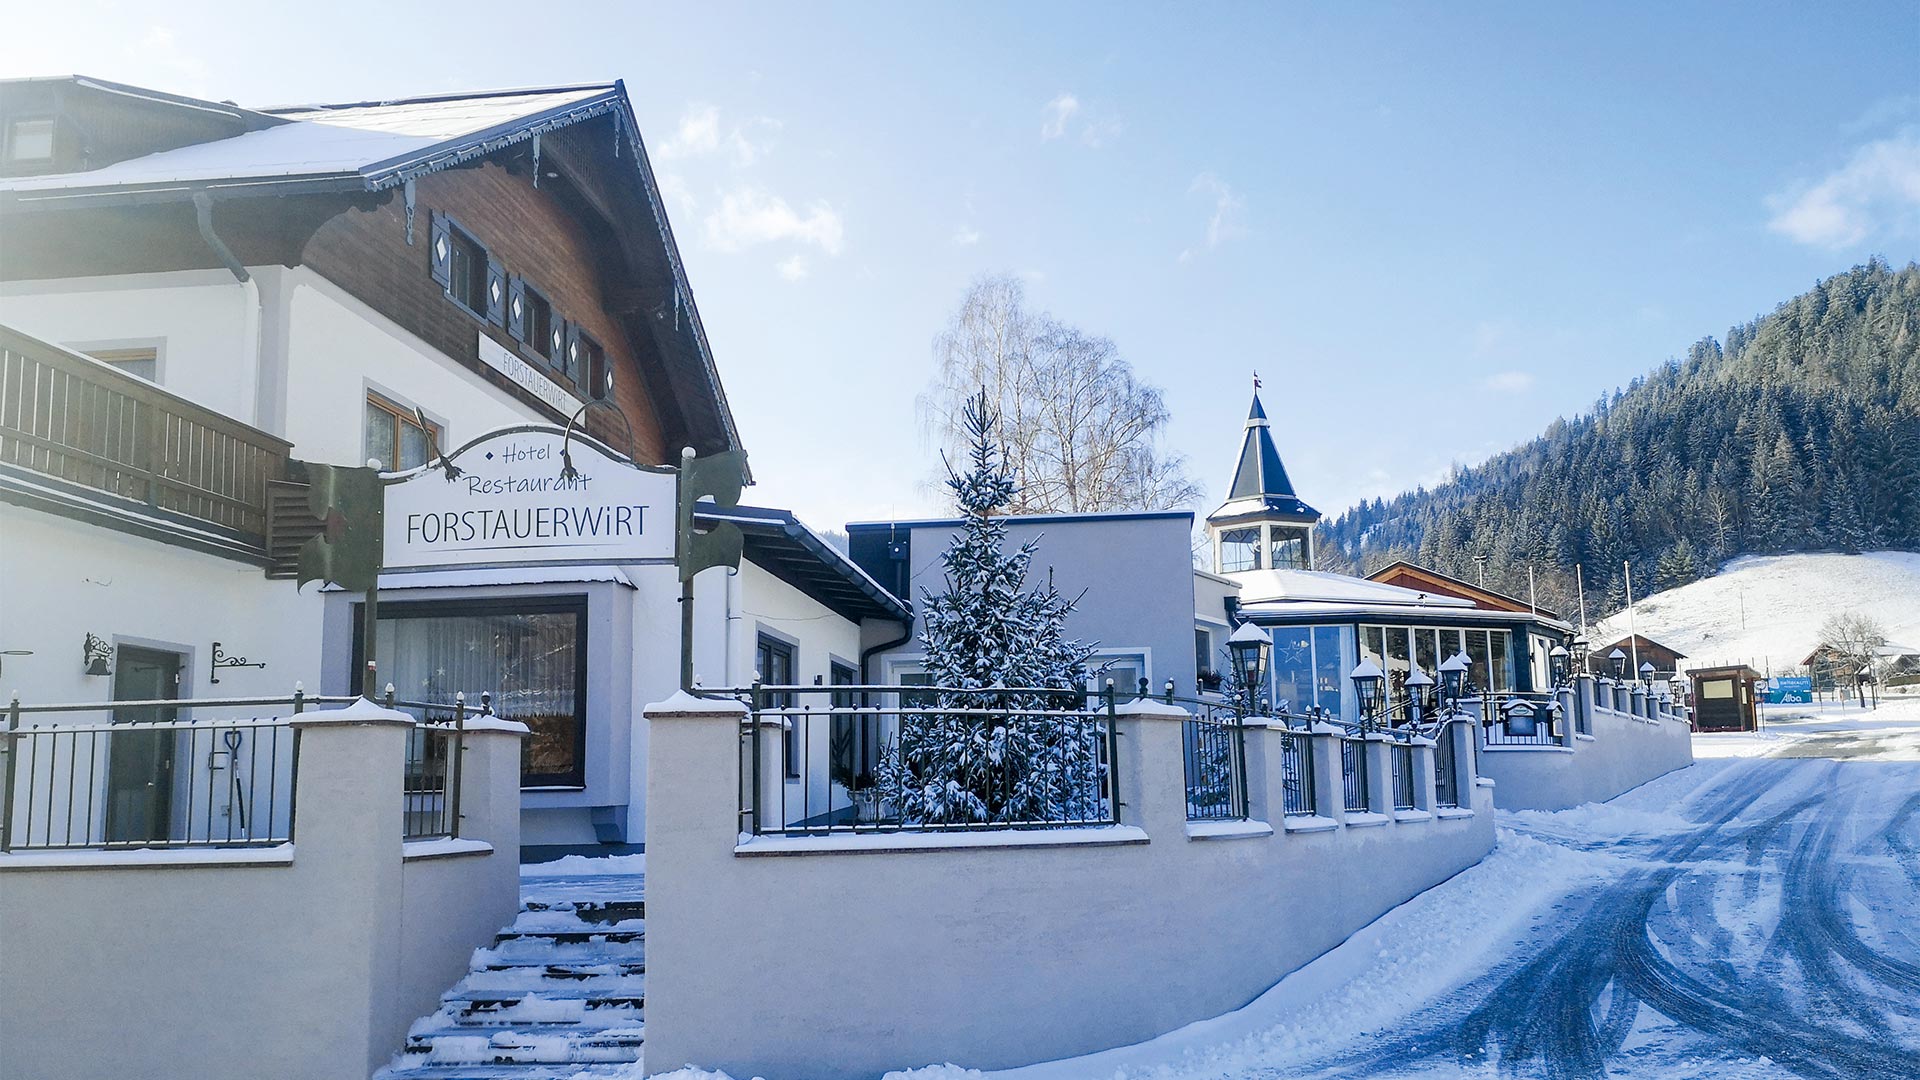 Hotel & Restaurant in Forstau, Salzburger Land